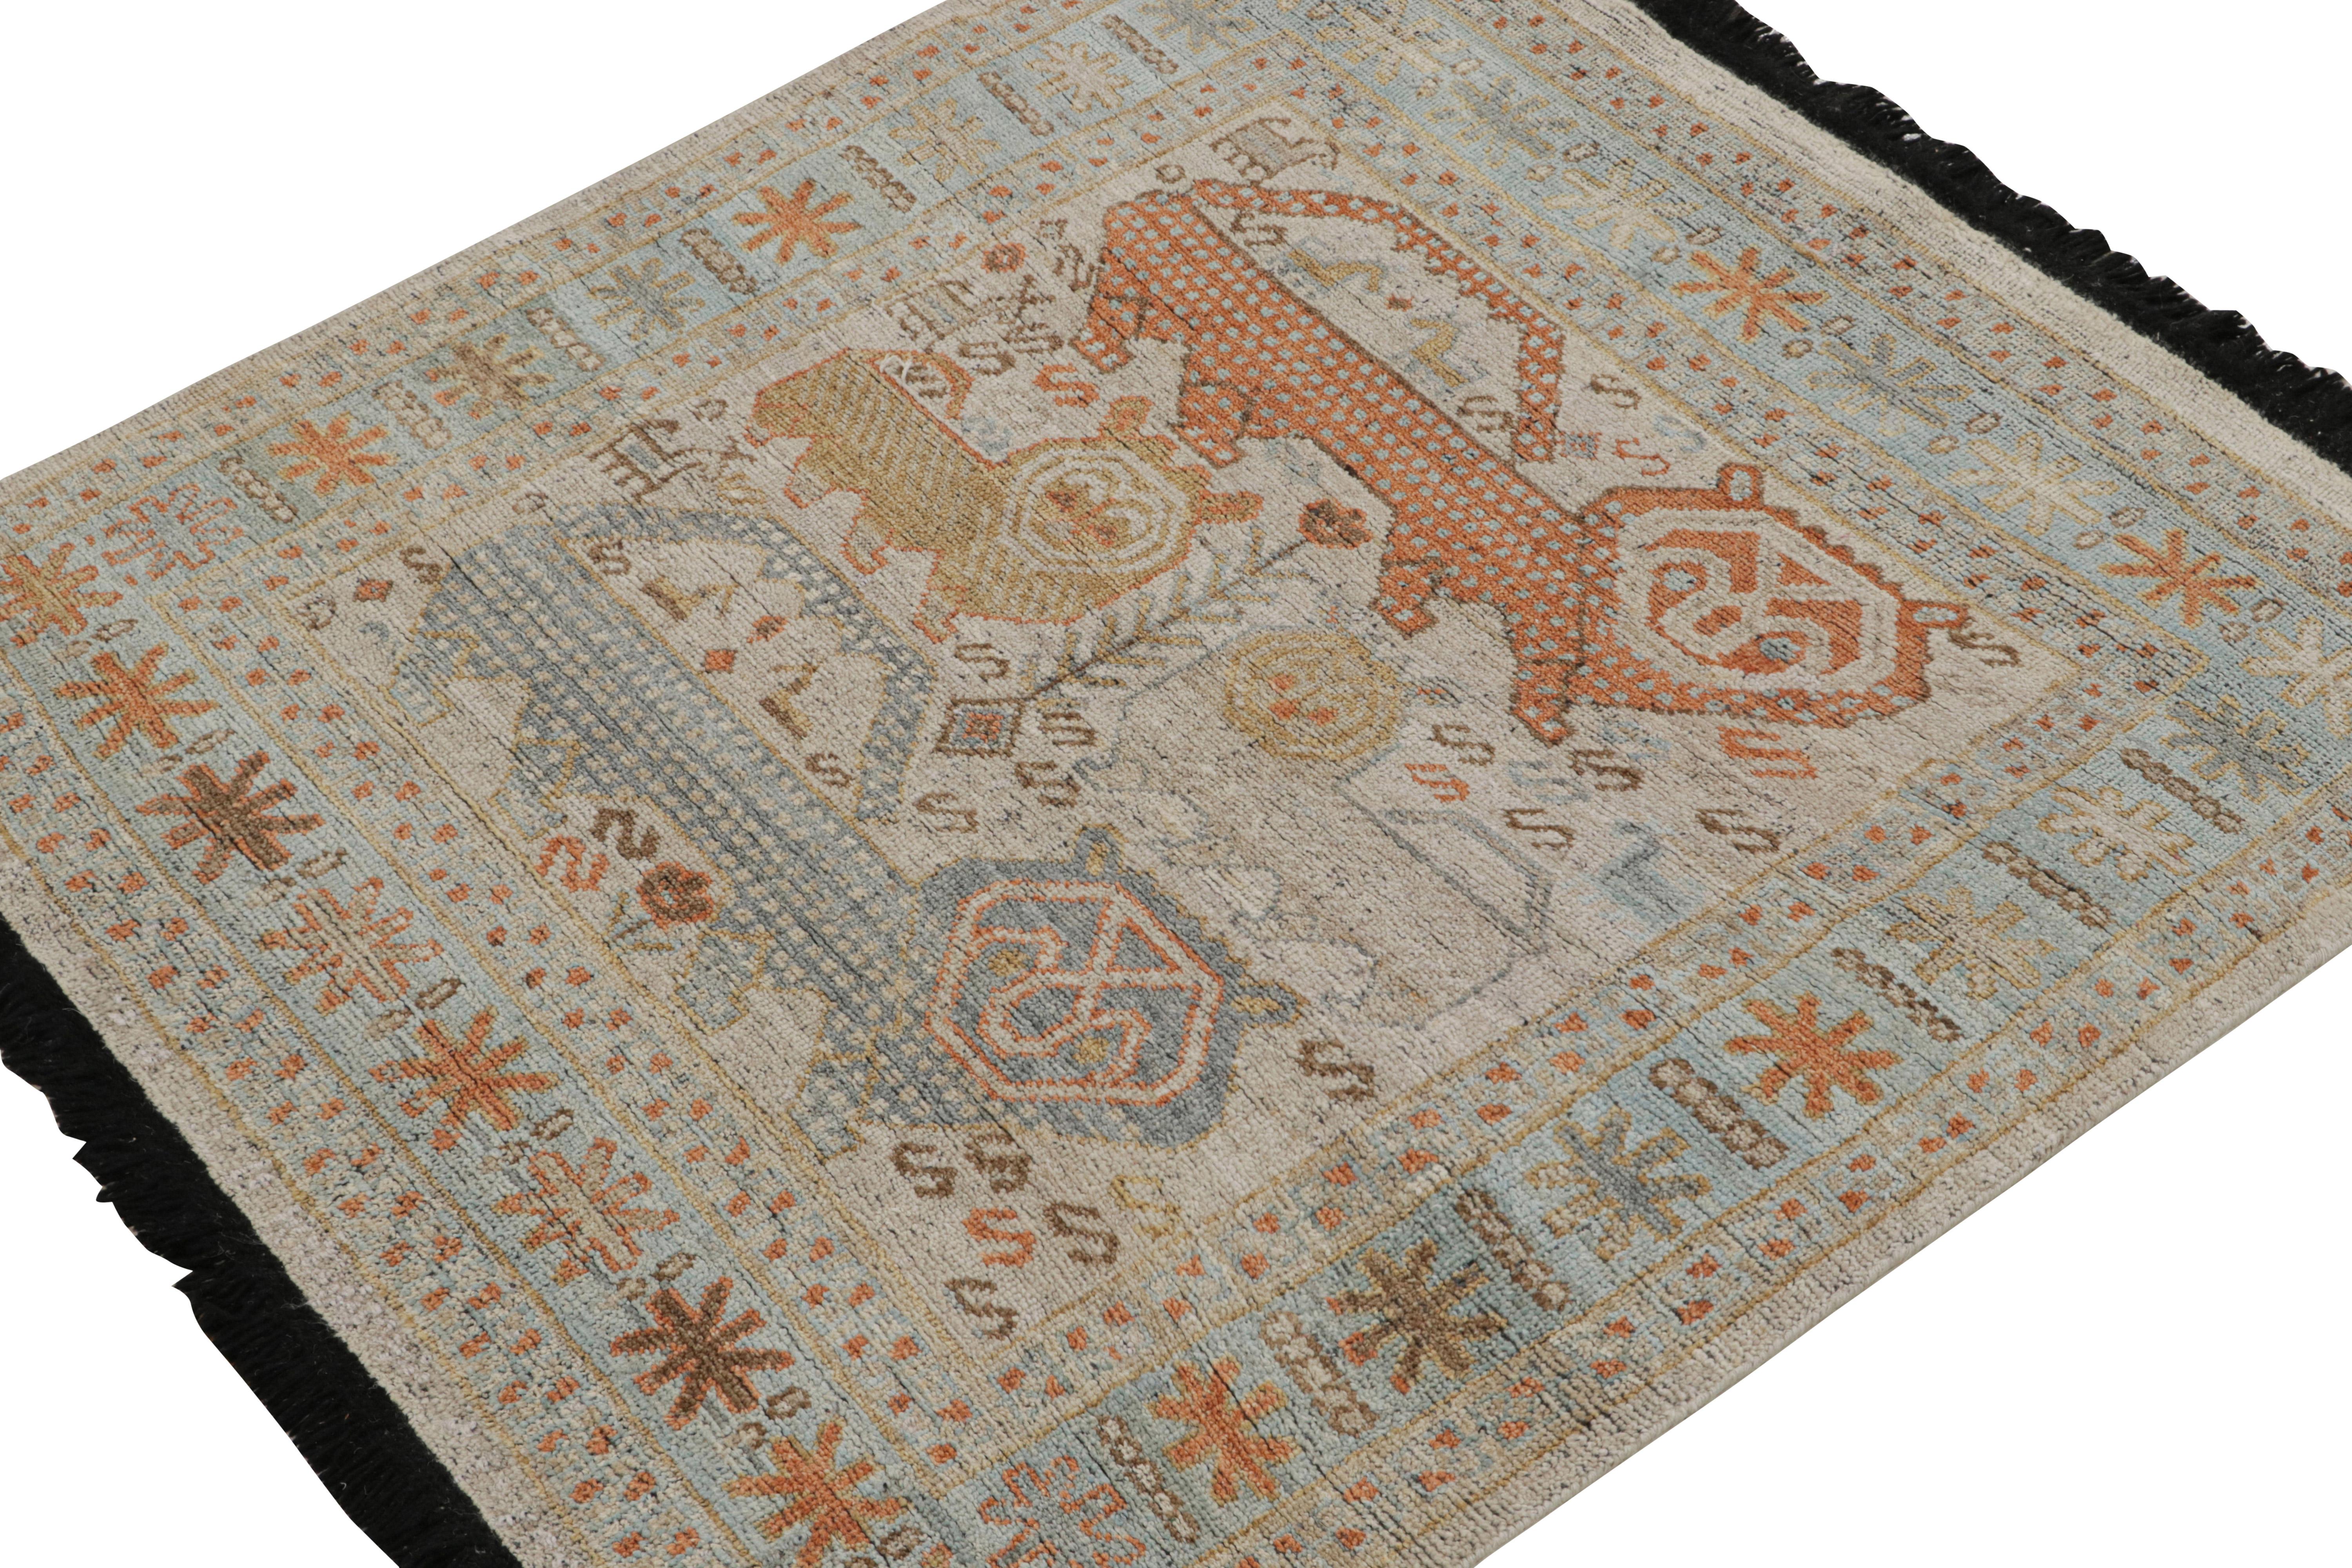 Ce tapis 4x4 est un nouvel ajout à la Collection Sally de Rug & Kilim. Noué à la main en laine, son design explore l'esthétique des tapis tribaux caucasiens dans une qualité moderne et rafraîchissante.

Sur le Design : 

Le dessin s'inspire de